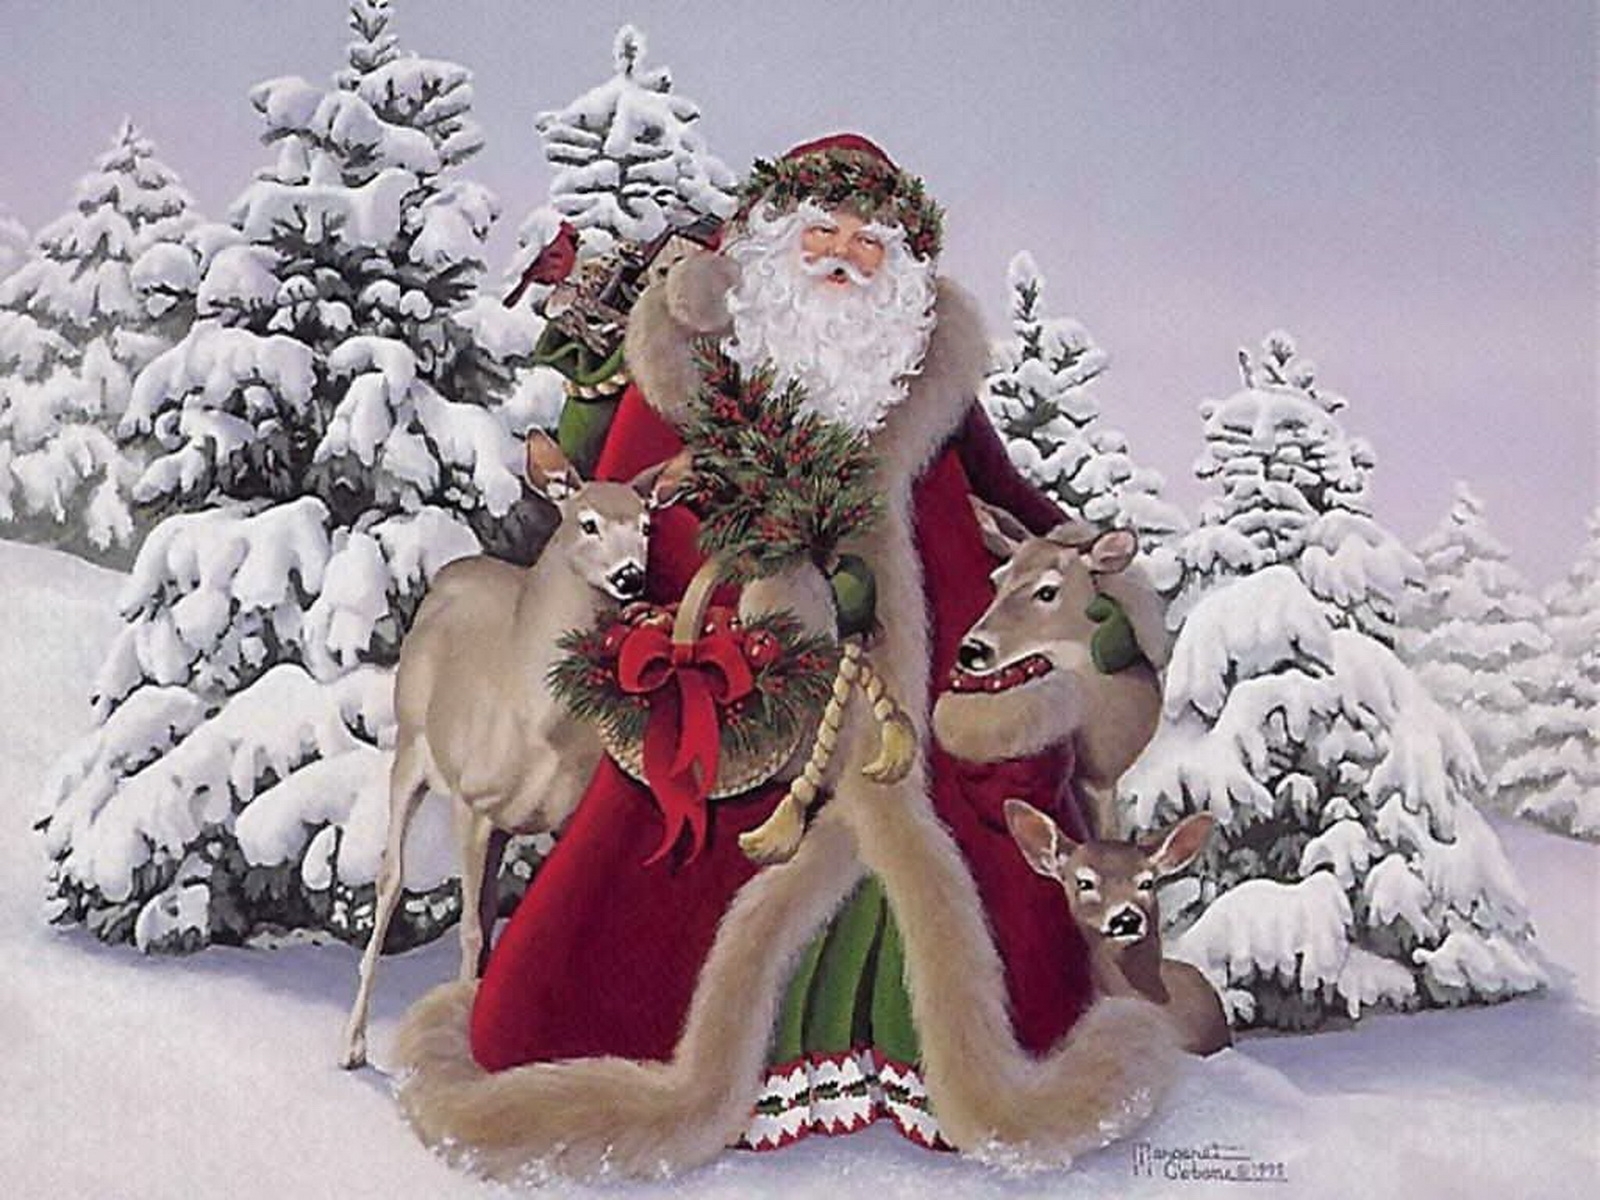 イメージを携帯電話にダウンロード 祝日 冬 新年 ジャックフロスト サンタクロース クリスマス 写真 無料 1672